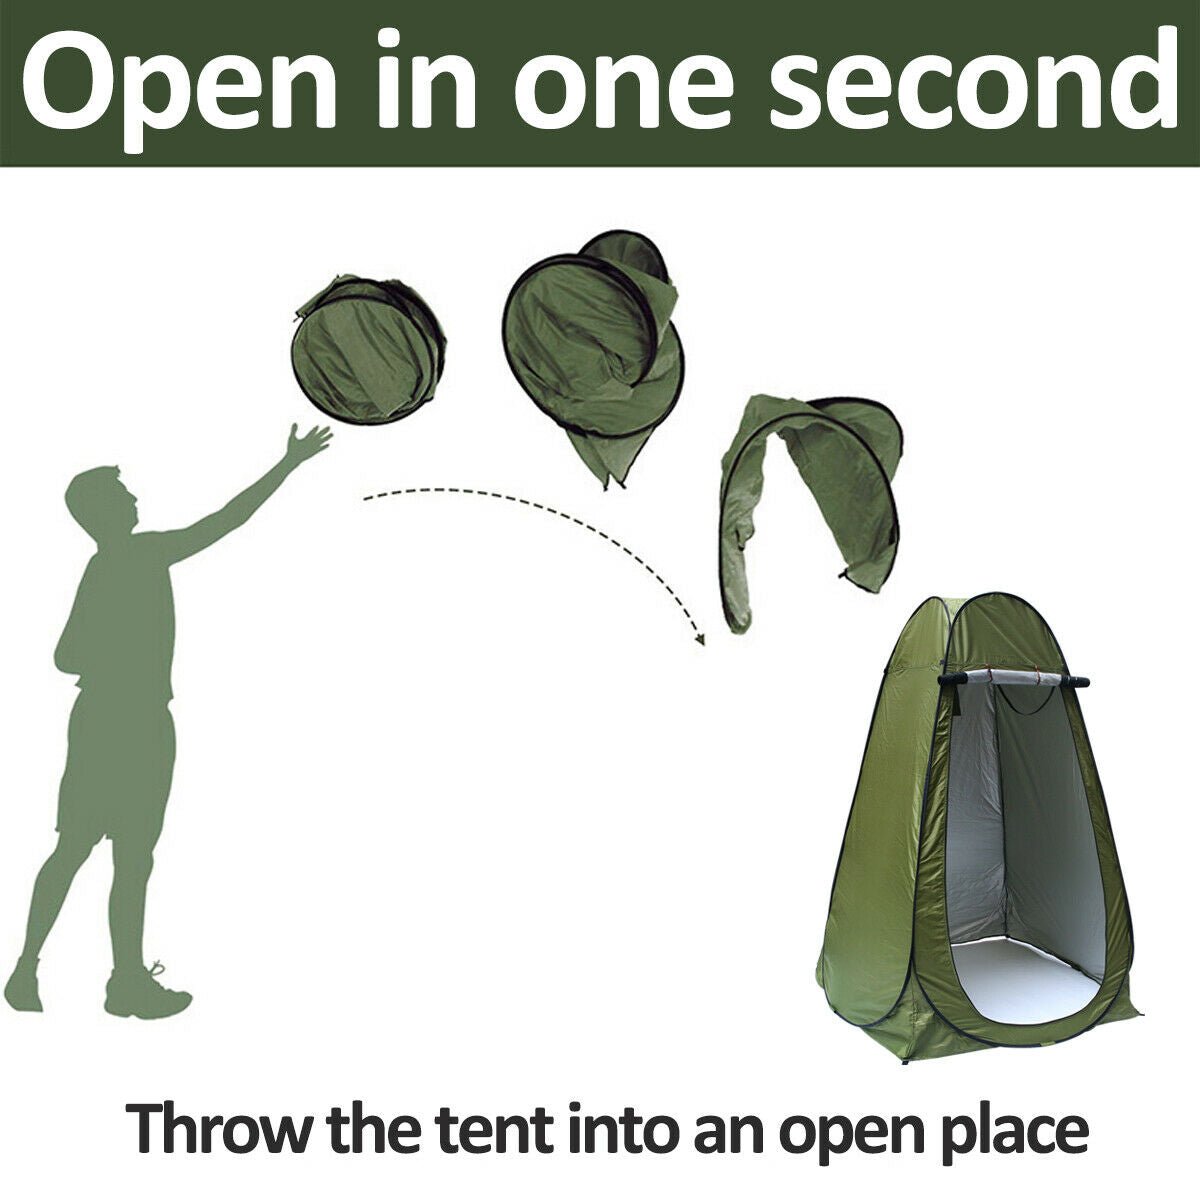 Aussie Instant Pop Up Tent